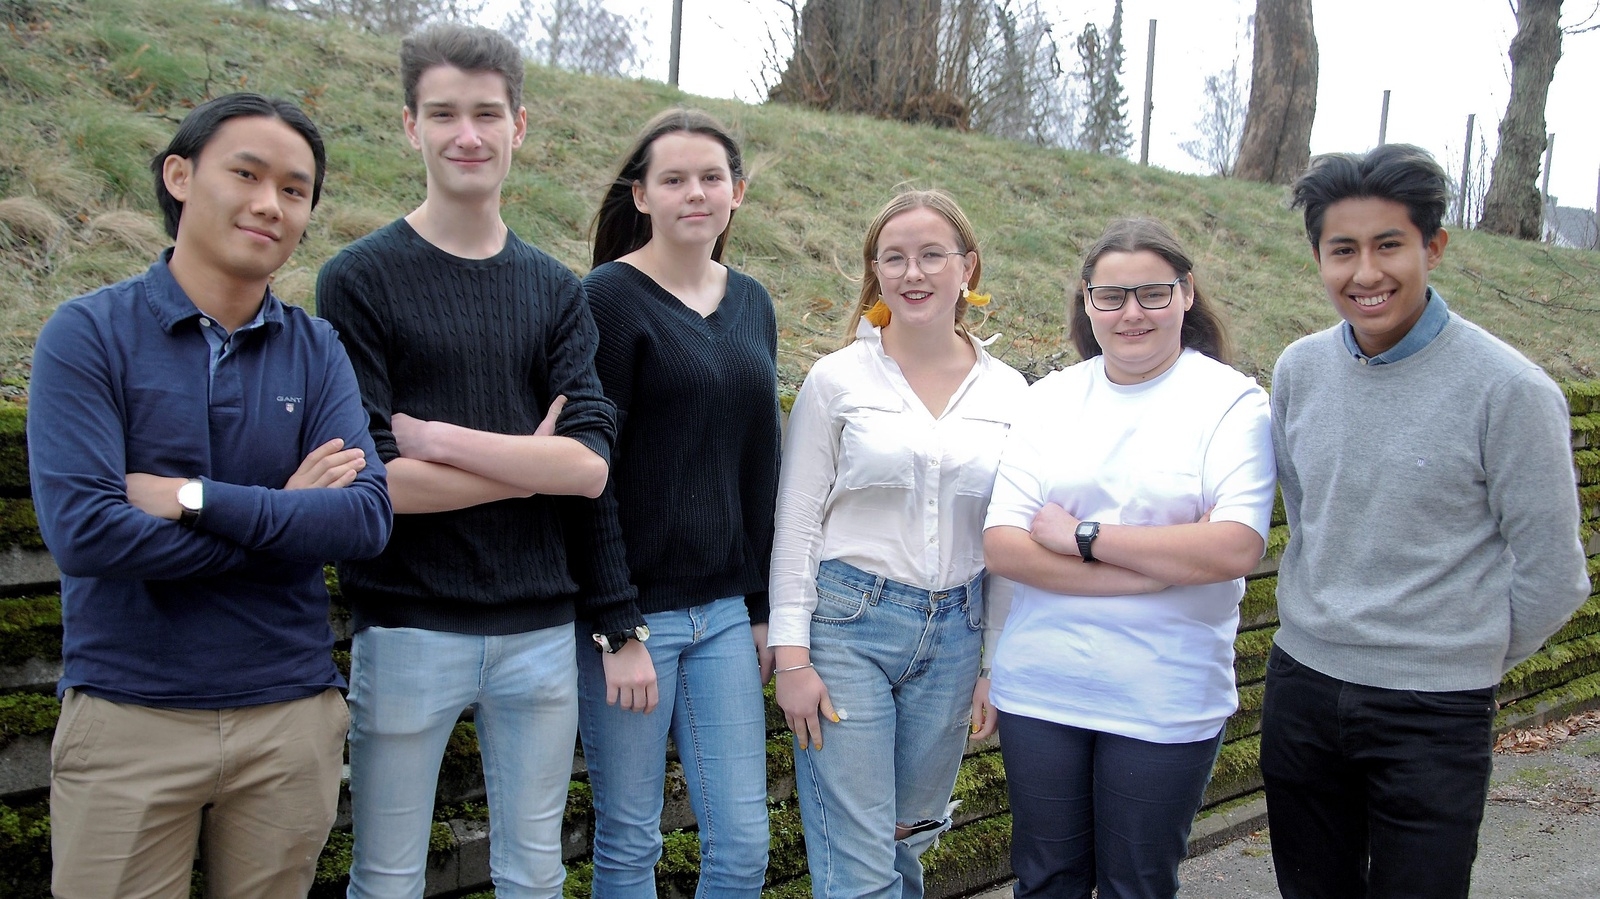 Elever från Tekniska skolan i Hässleholm besökte riksdagen. Alexander San, Johannes Bexell, Agnes Cato, Märta Sundlöf, Anastasia Timbuk och André Varga.